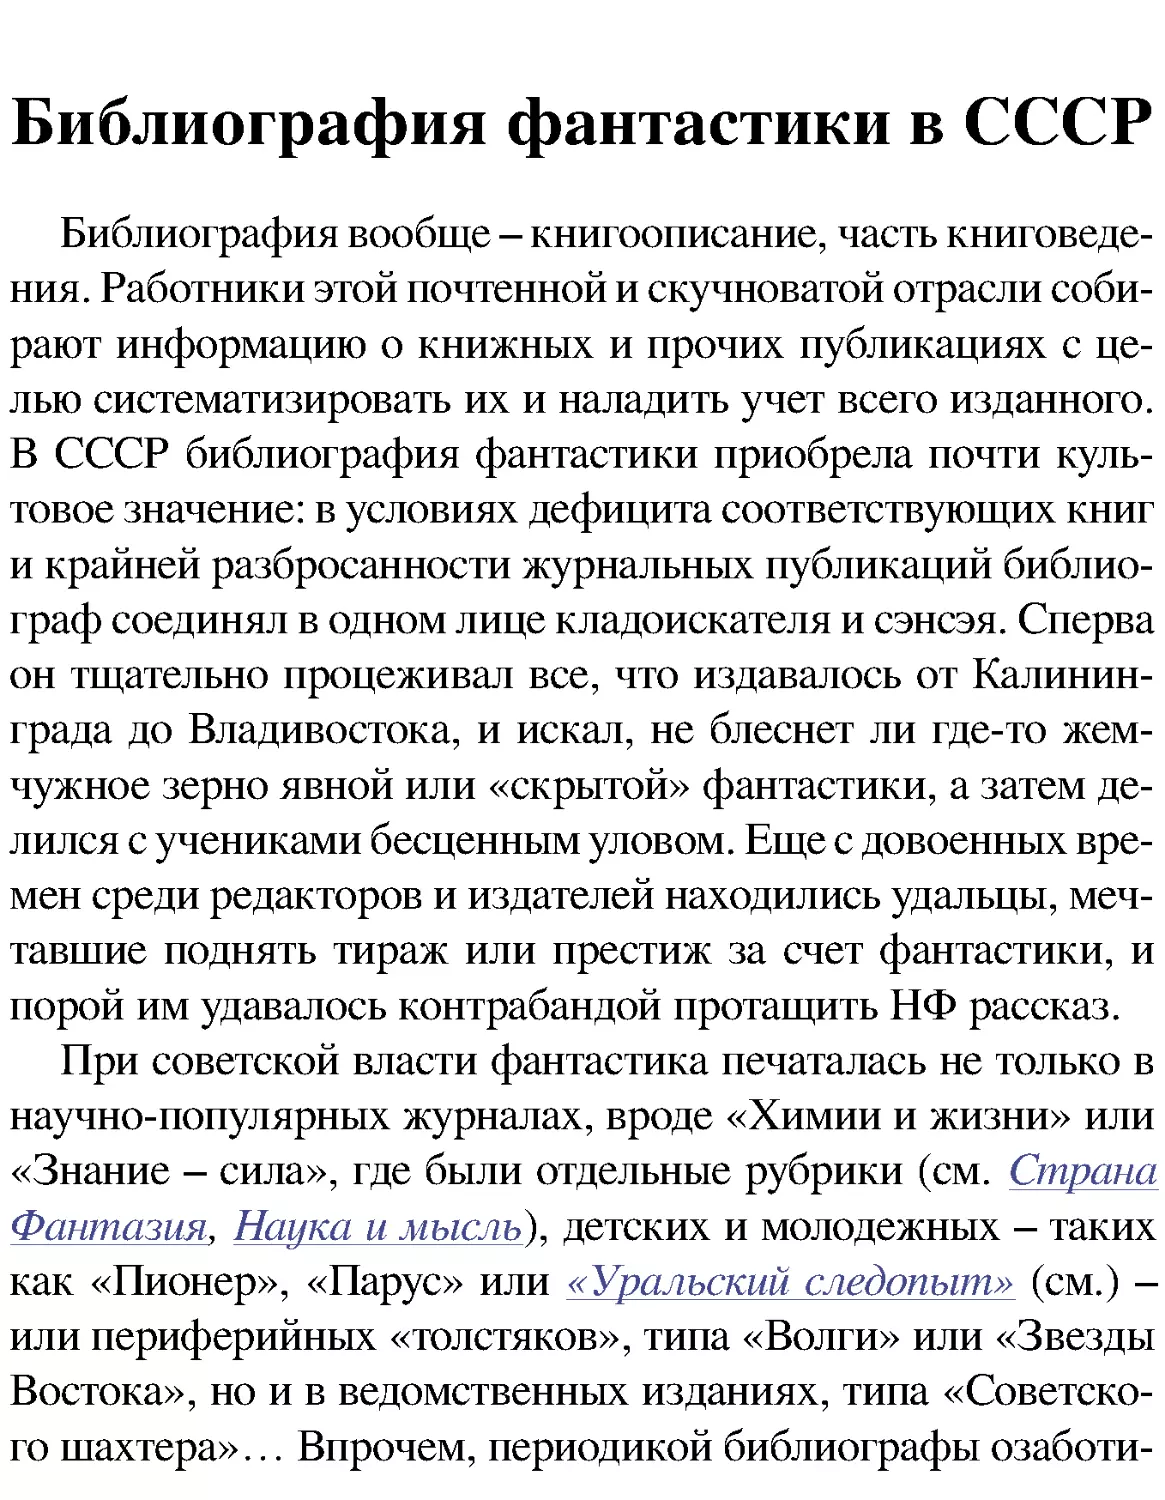 Библиография фантастики в СССР